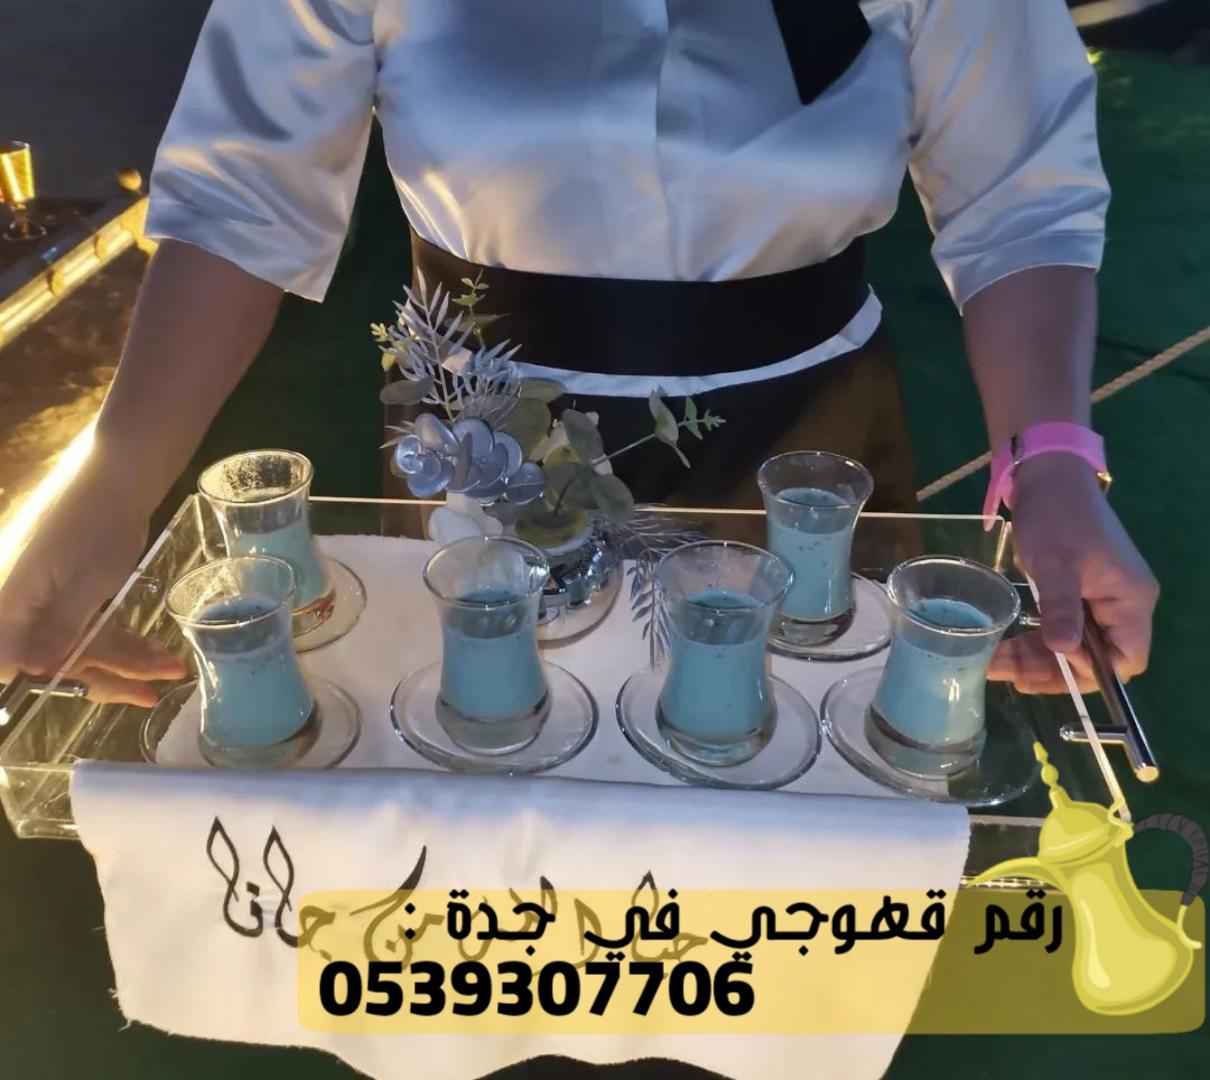 صبابات قهوة و صبابين قهوه في جدة,0539307706 950451970